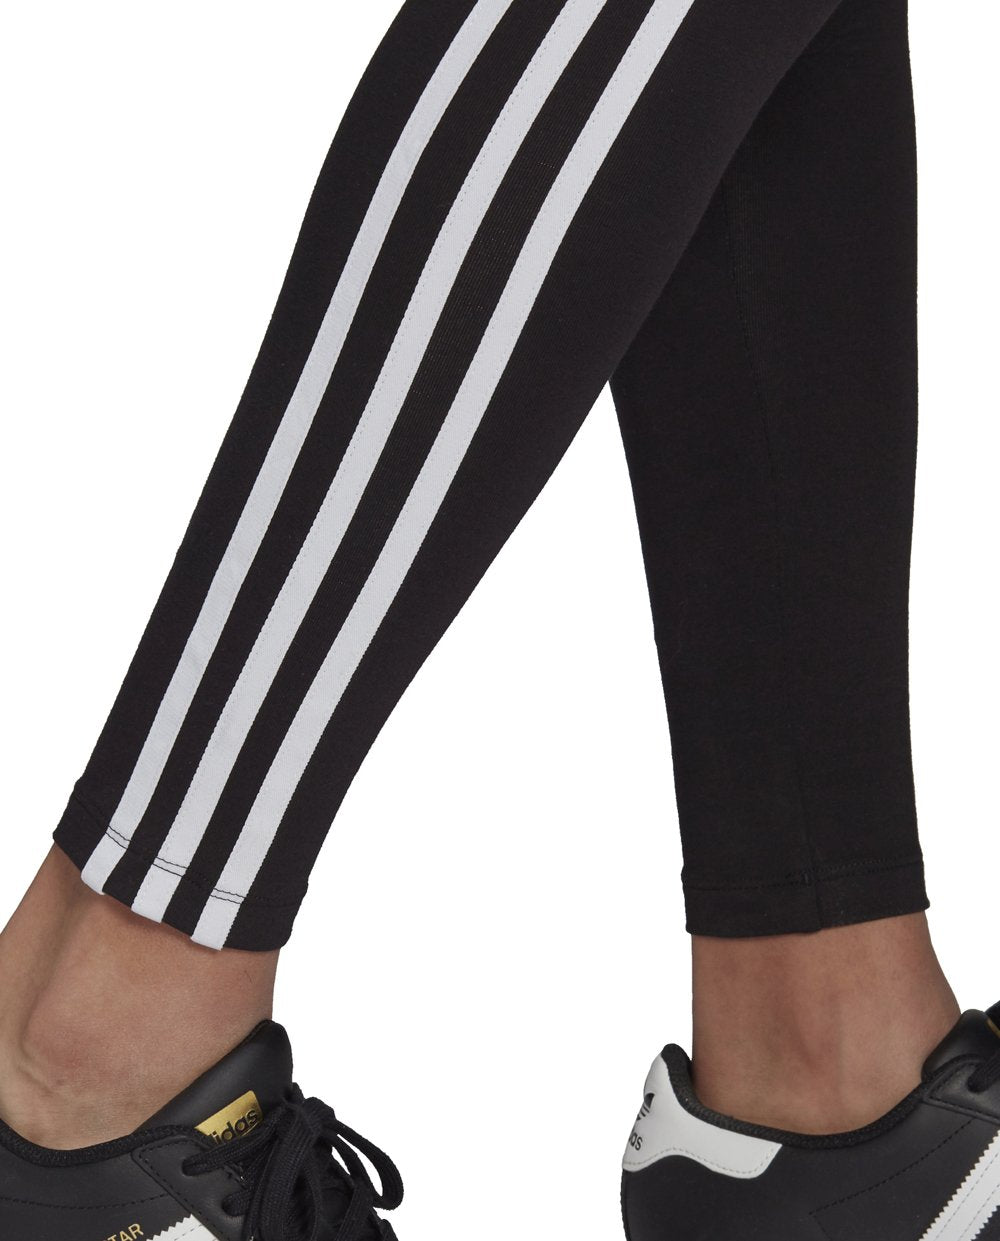 Adidas Black Leggings with White Stripes